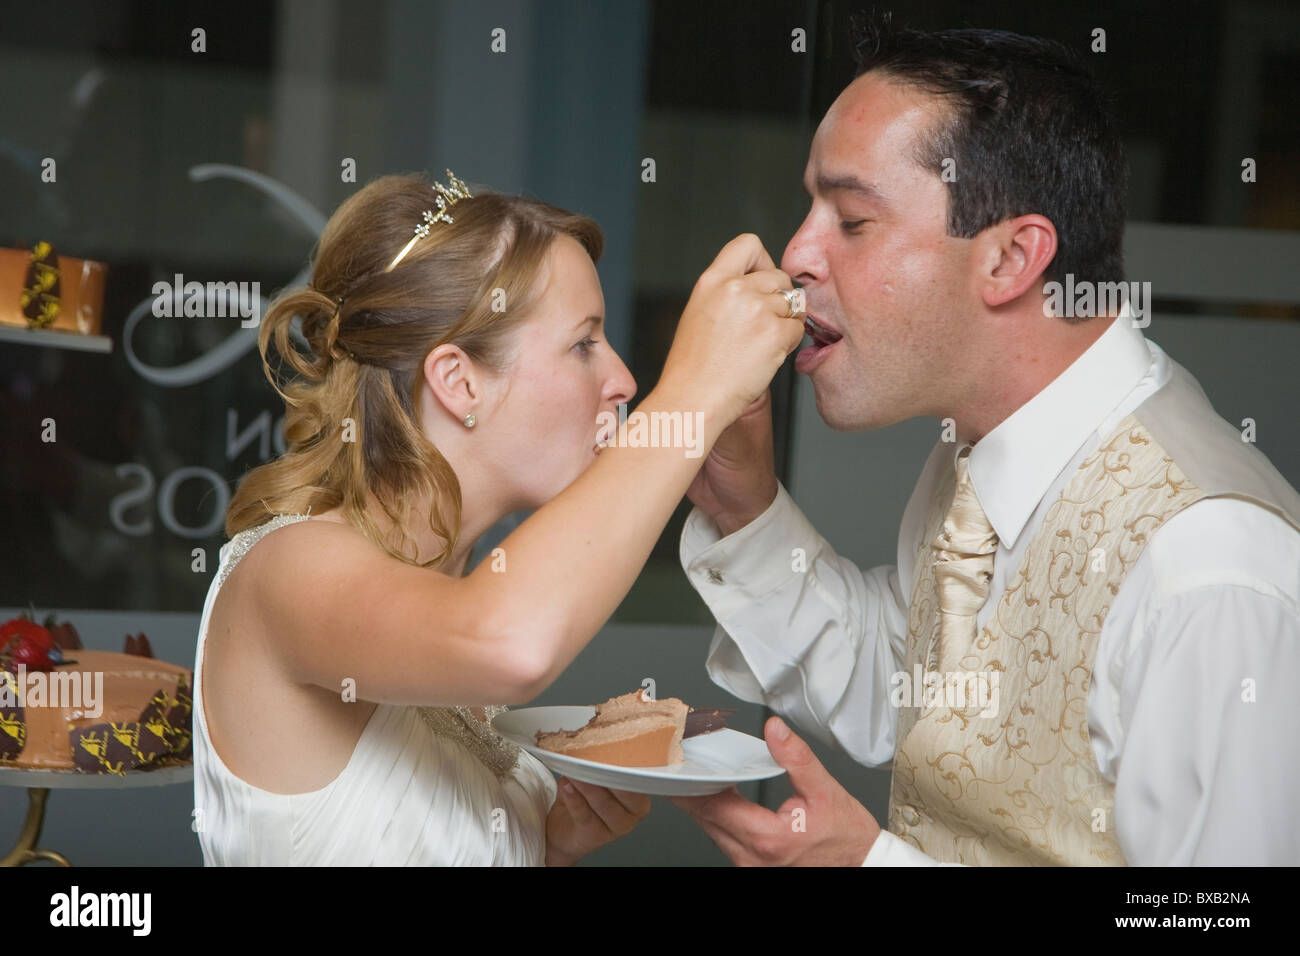 La novia y el novio los disparos de una boda española. Bonita serie de fotos de momentos clave. Foto de stock